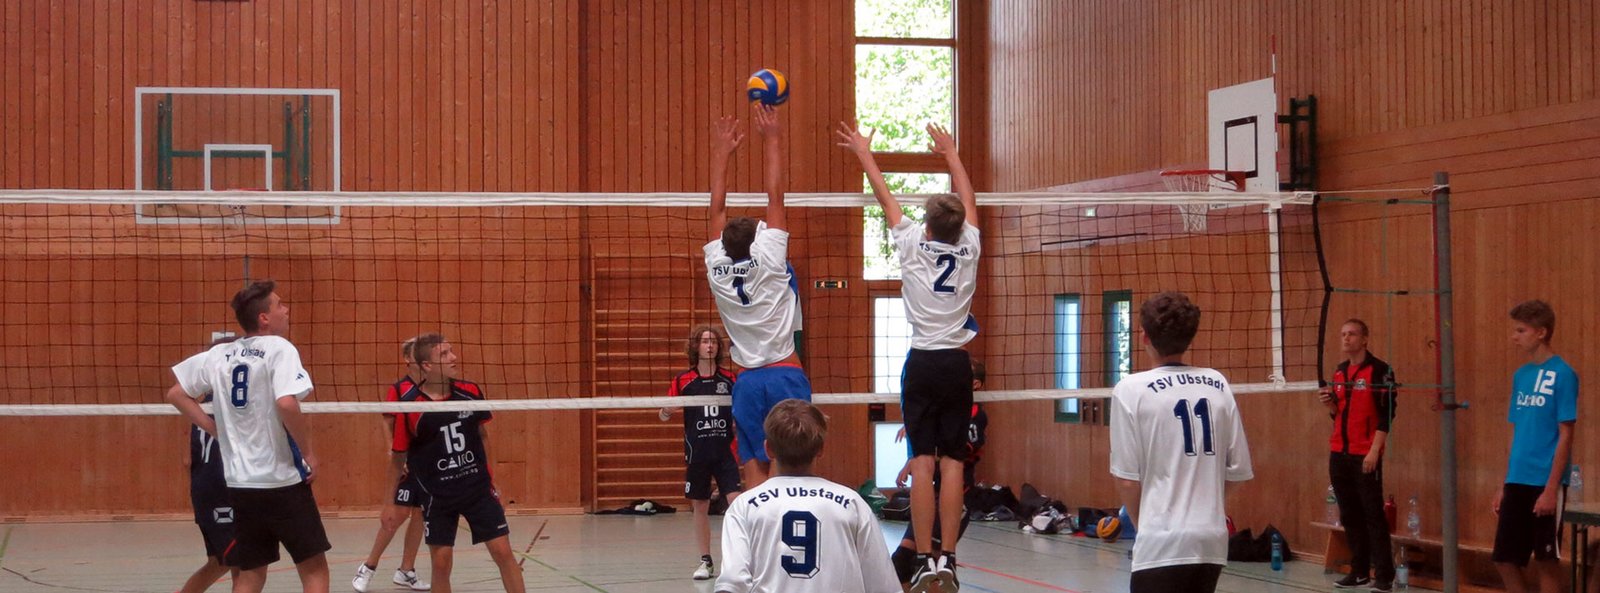 Jugend der Volleyball SG Ubstadt / Forst